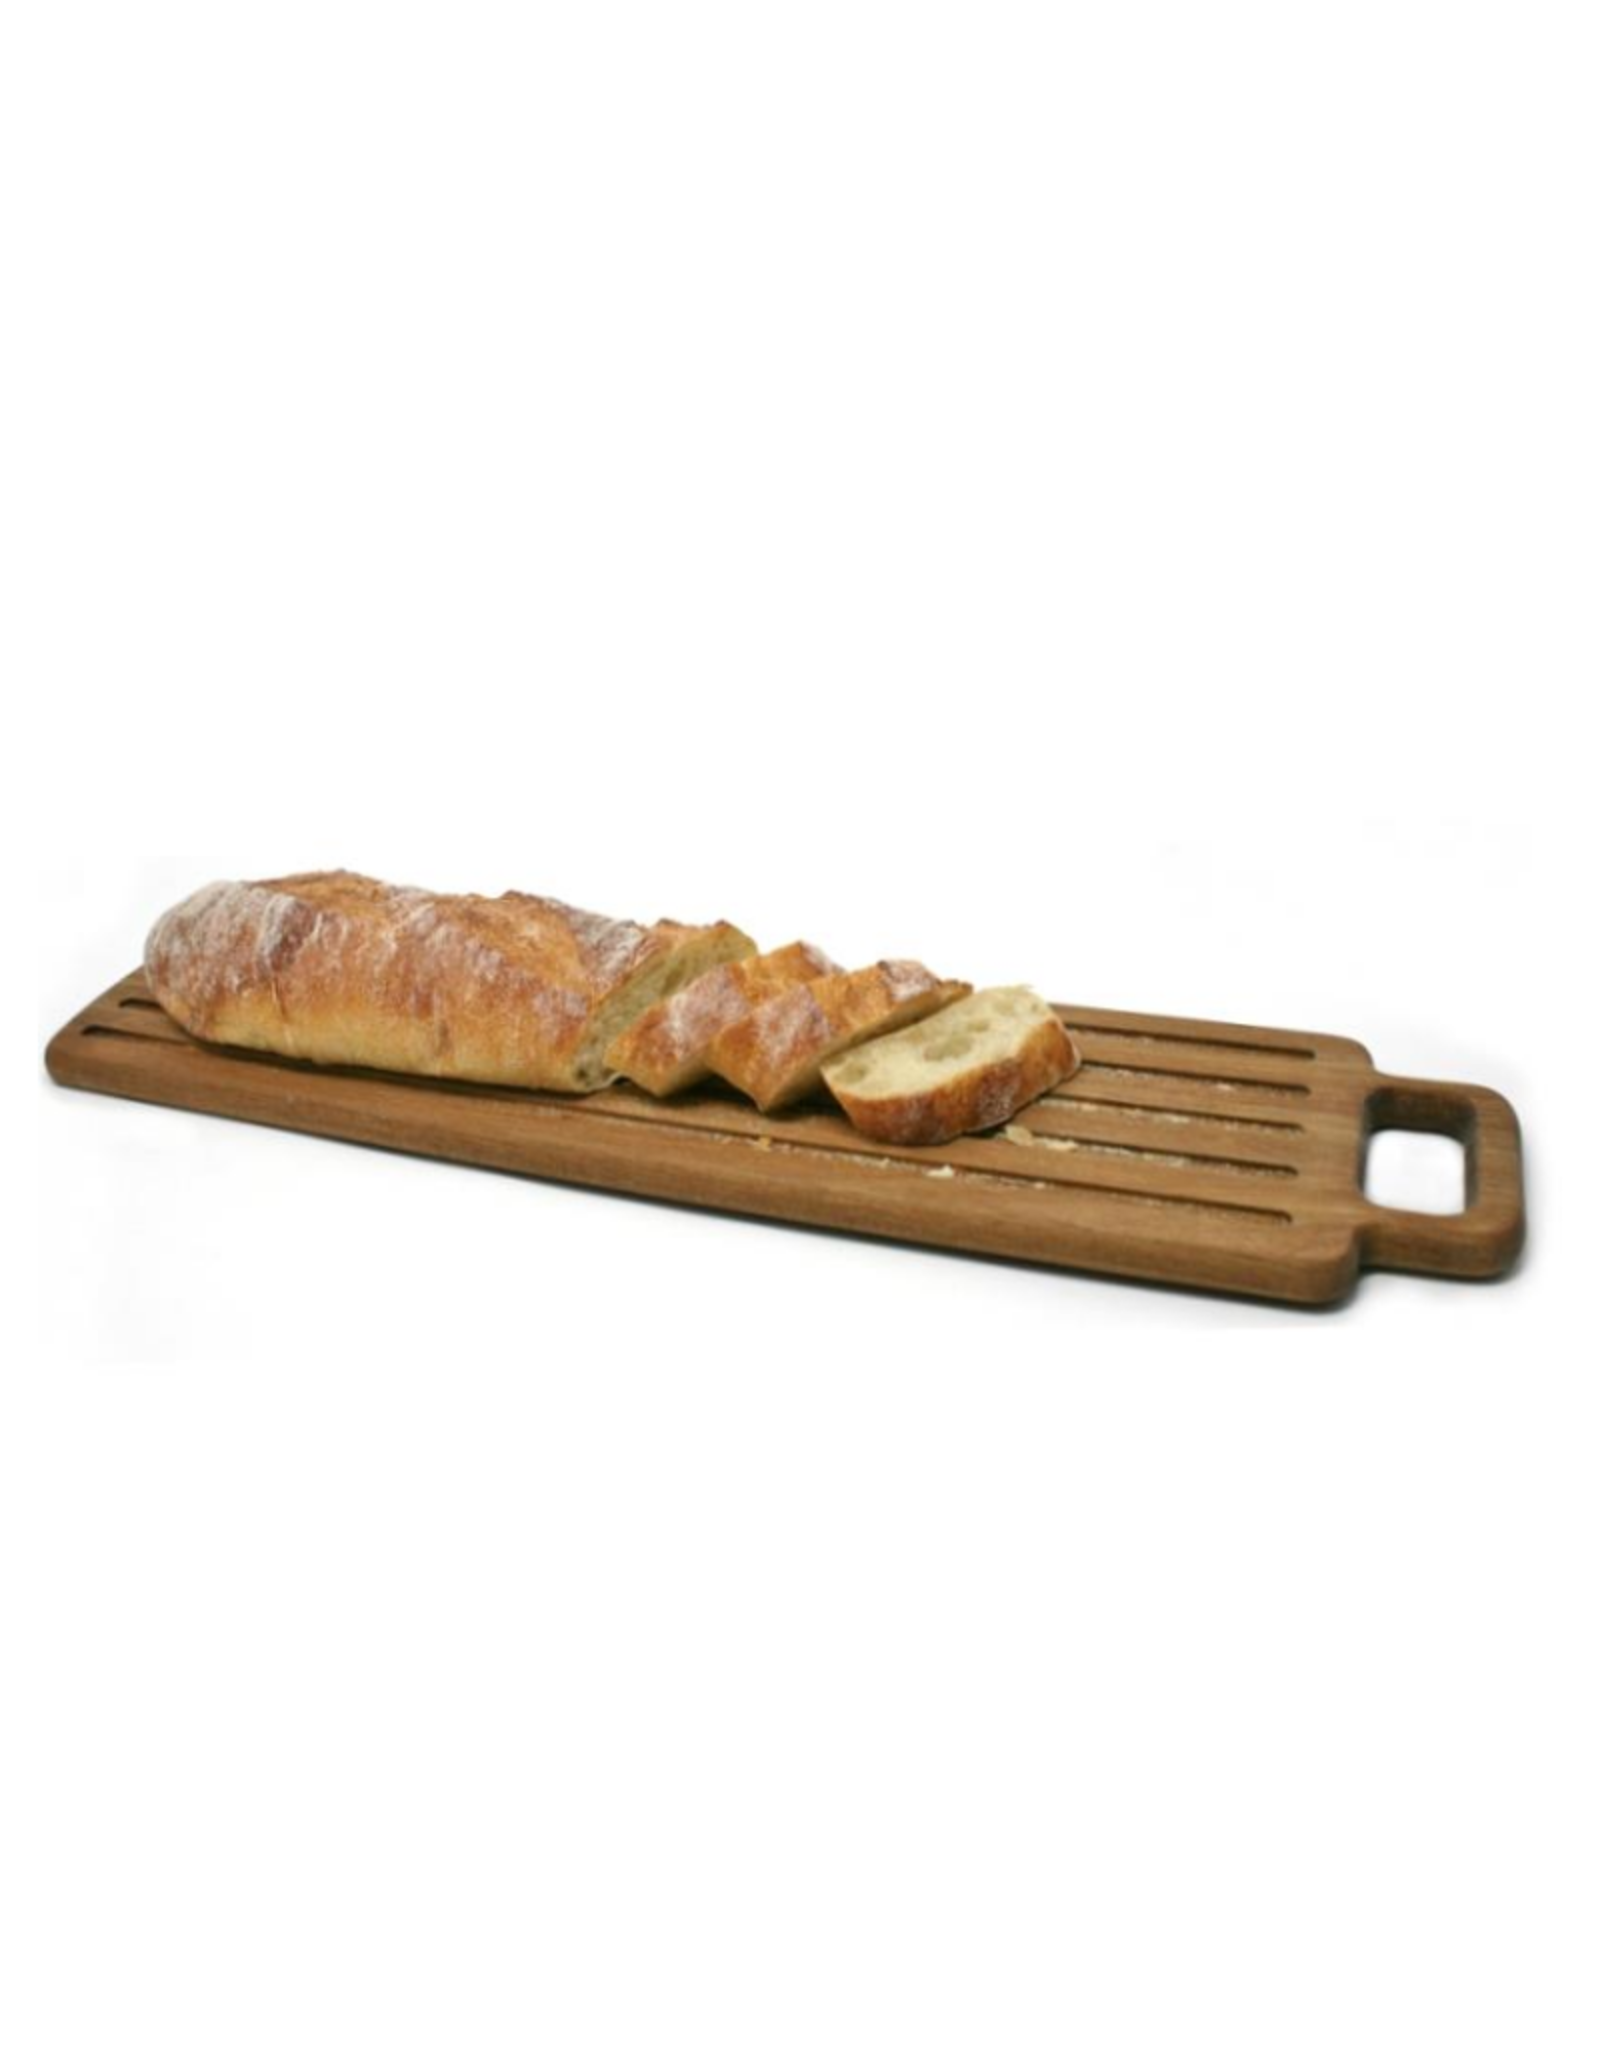 Planche à pain en bois réversible 52 x 12cm